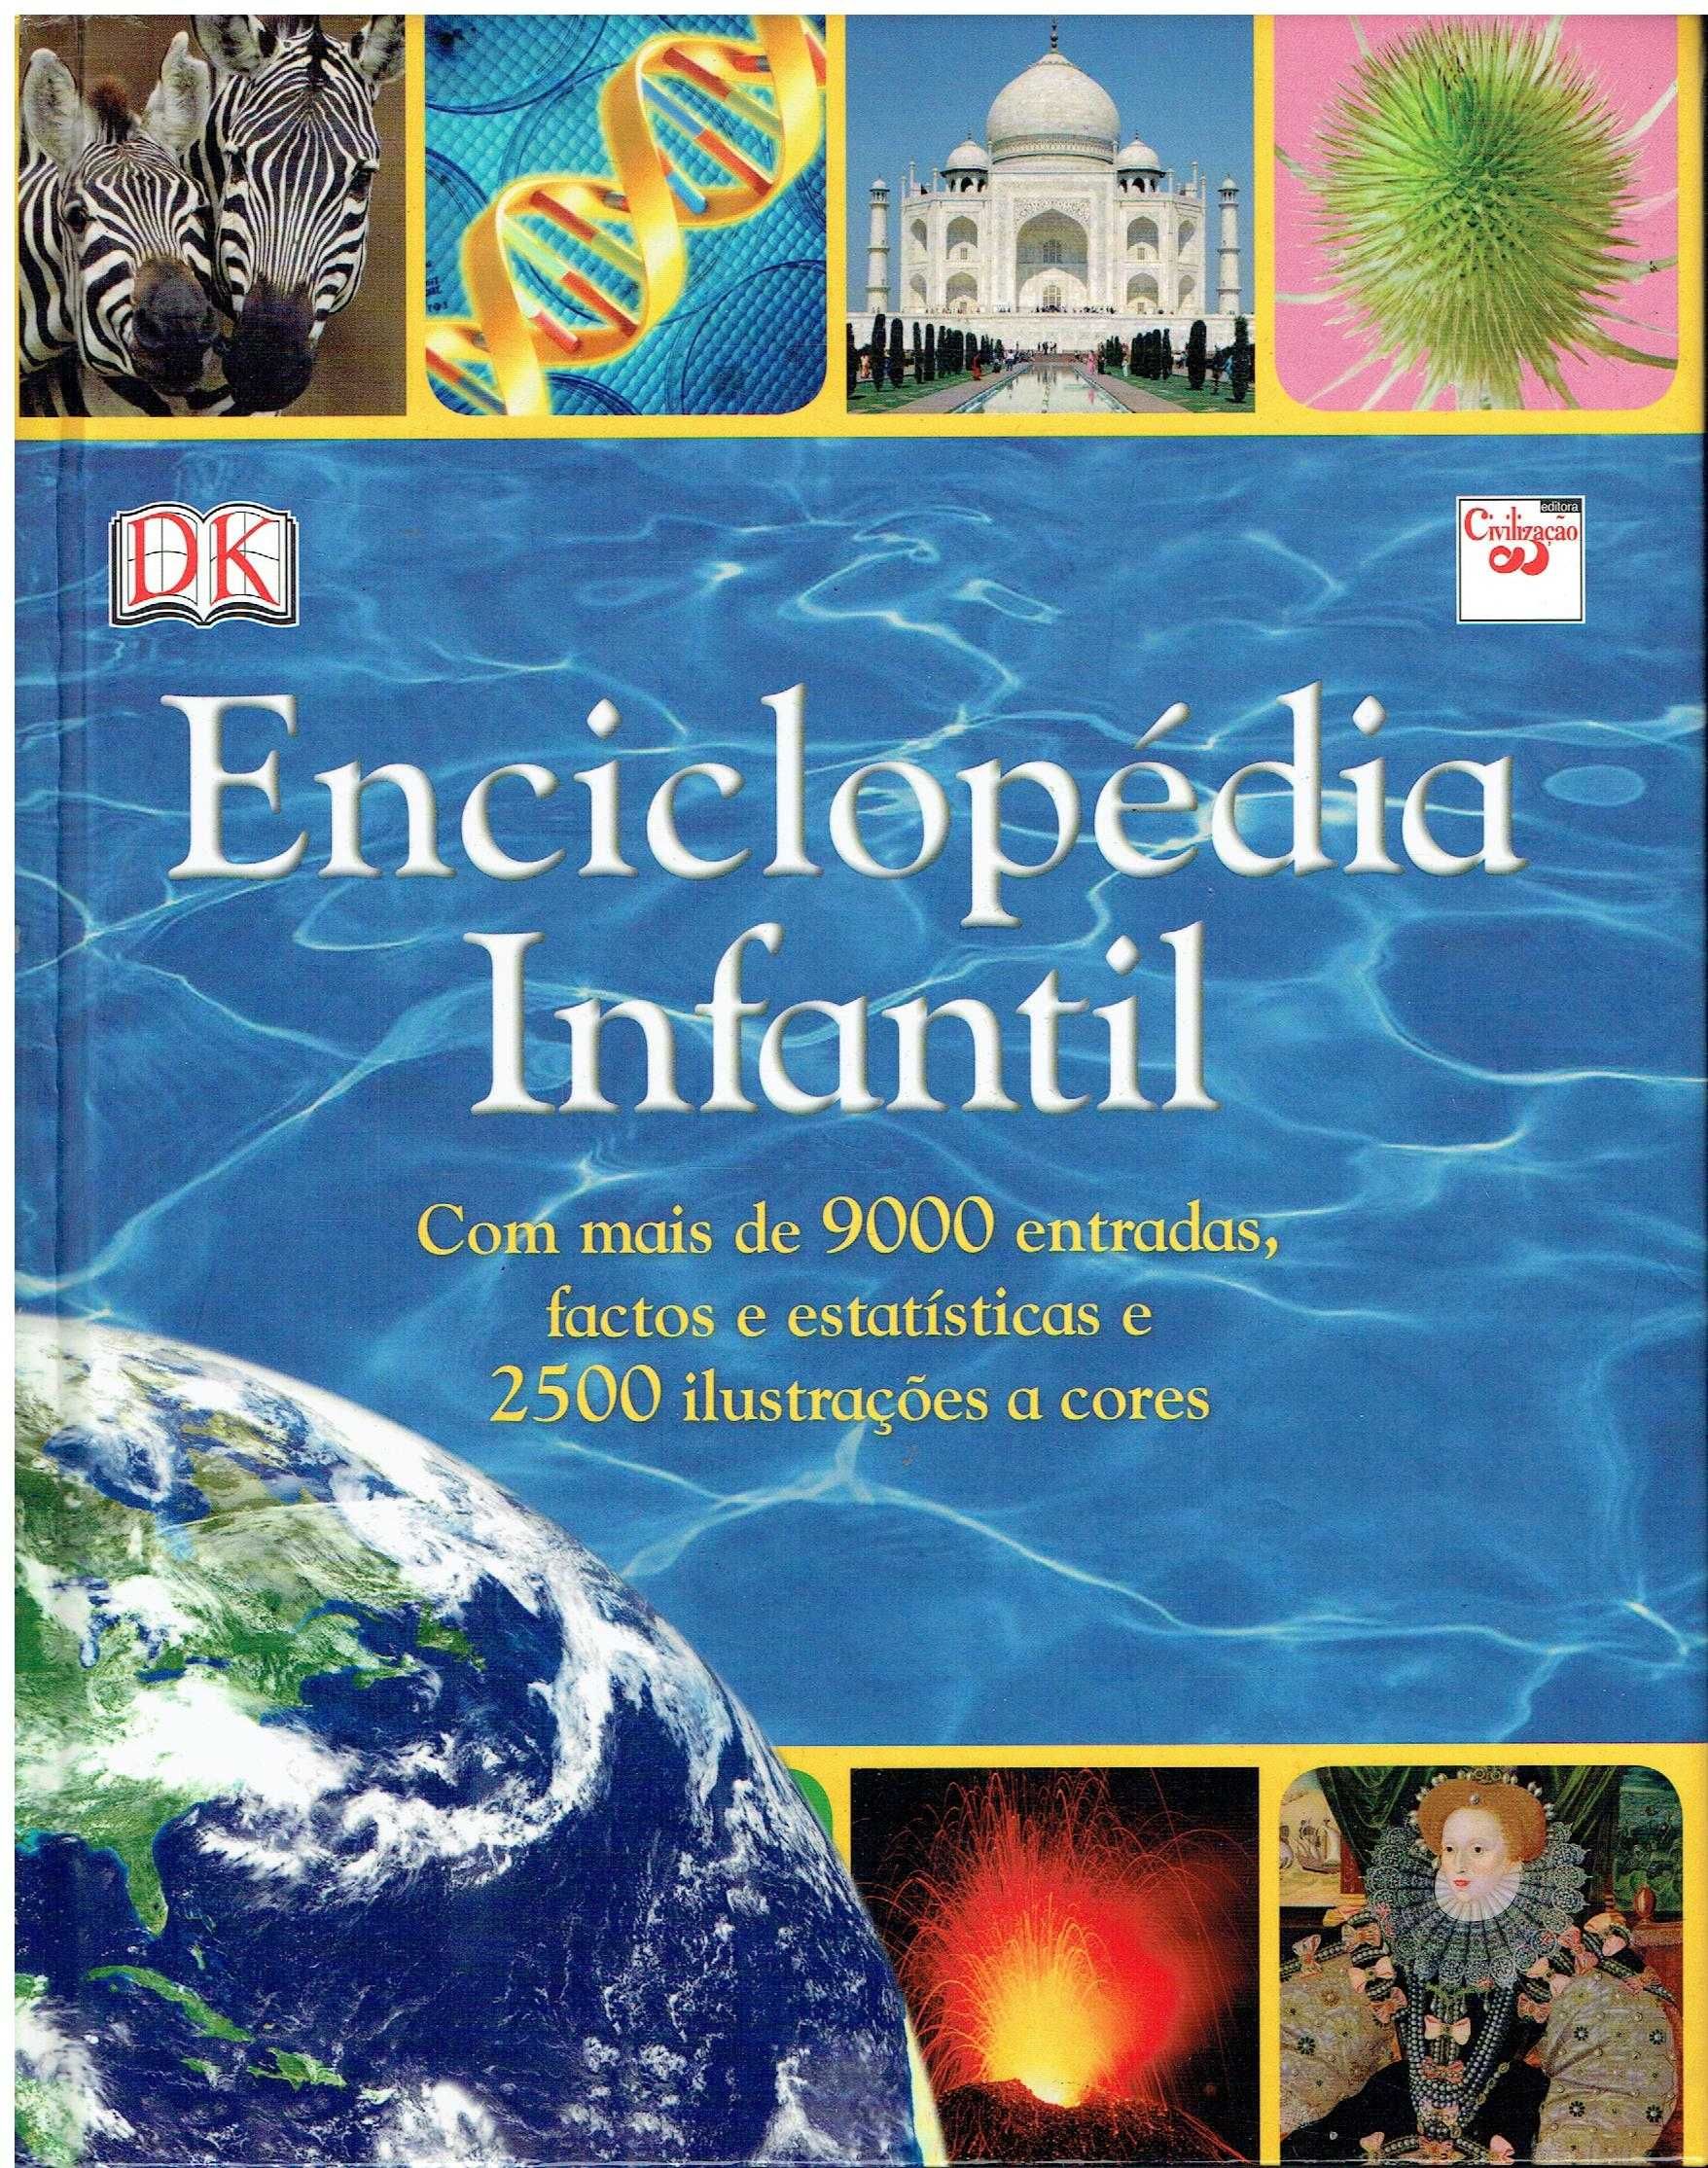 13284

Enciclopédia Infantil

editor: Livraria Civilização Editora